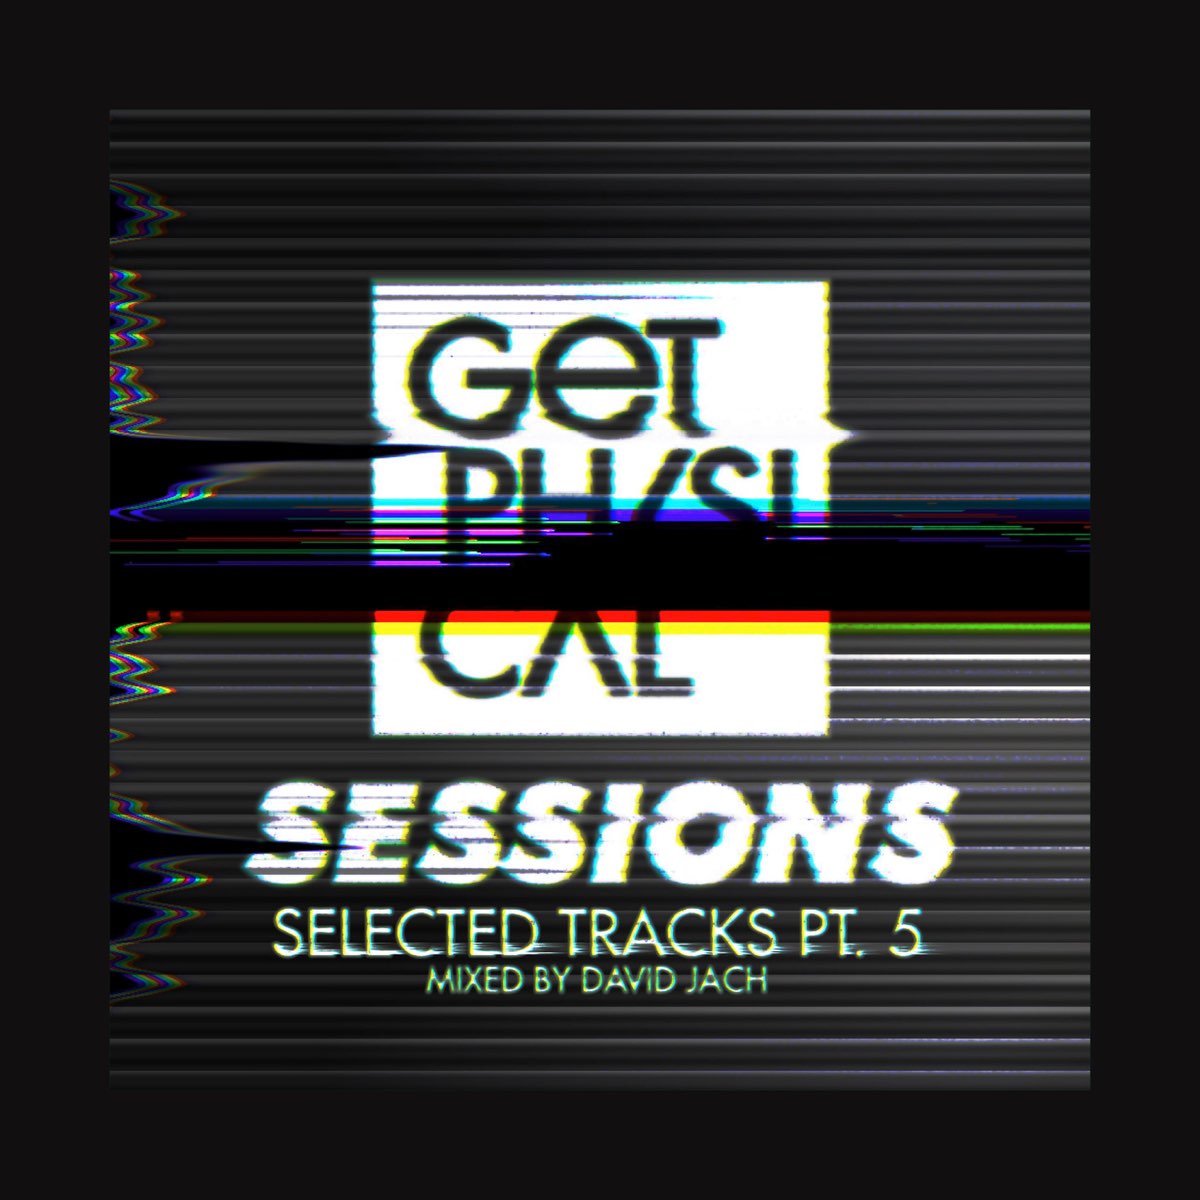 Selected tracks. Select tracks